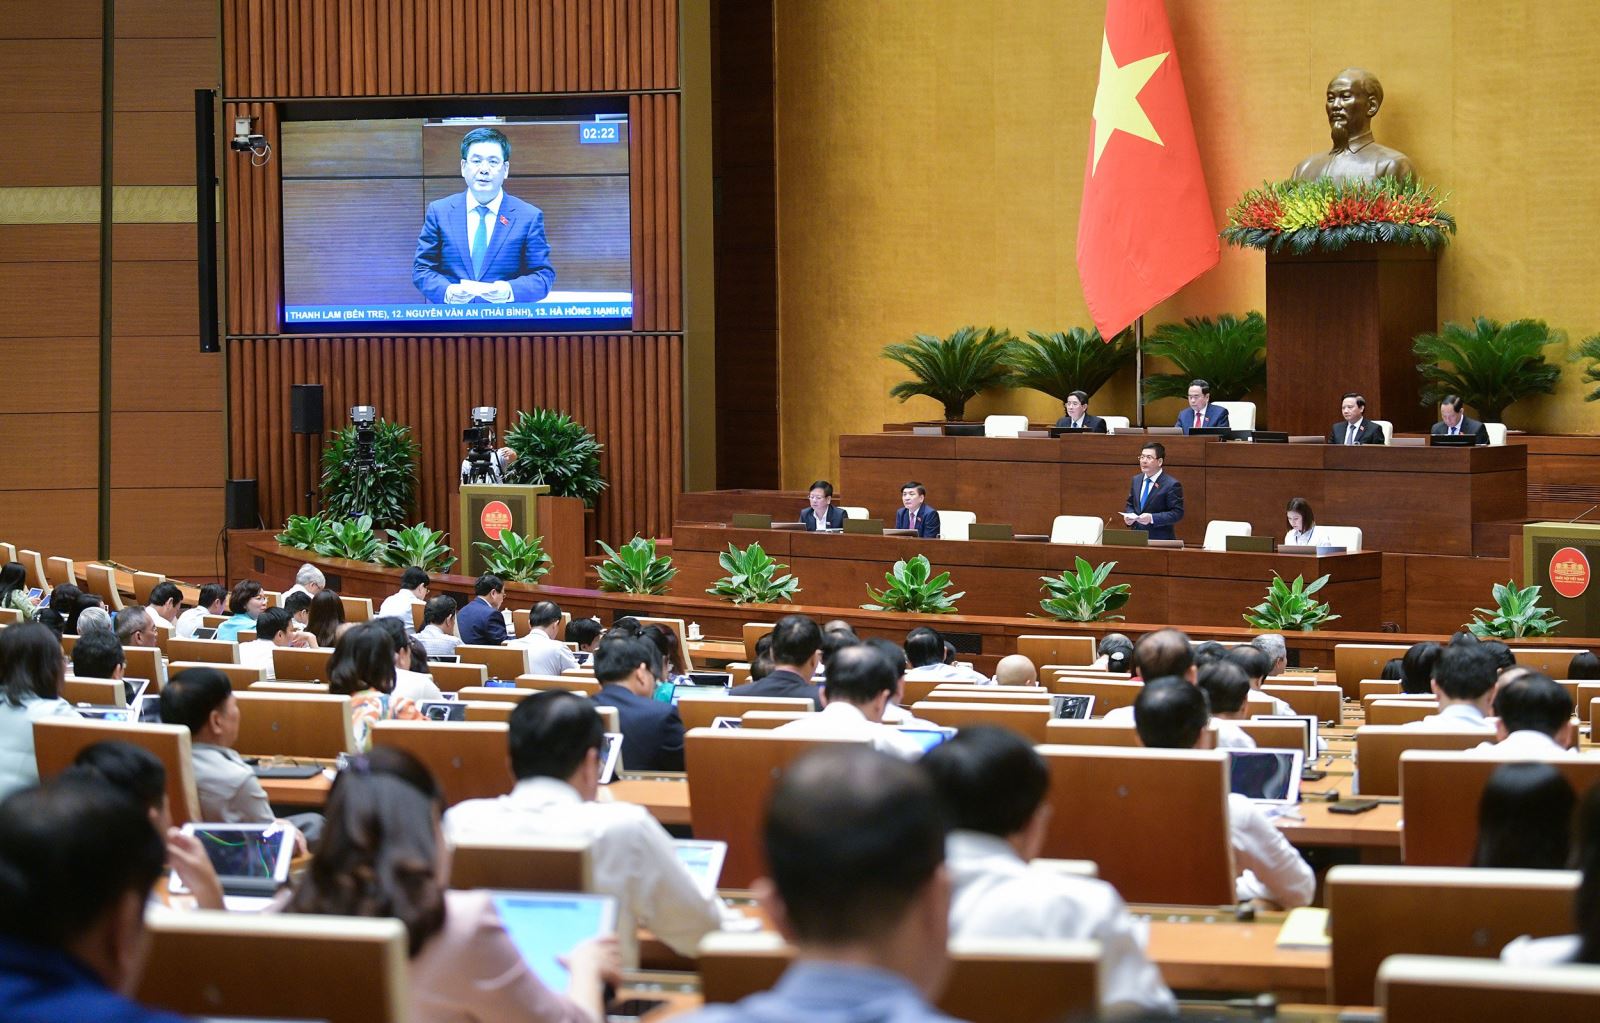 Bộ trưởng Nguyễn Hồng Diên: ngành công thương đã đóng góp quan trọng vào sự phát triển kinh tế của đất nước